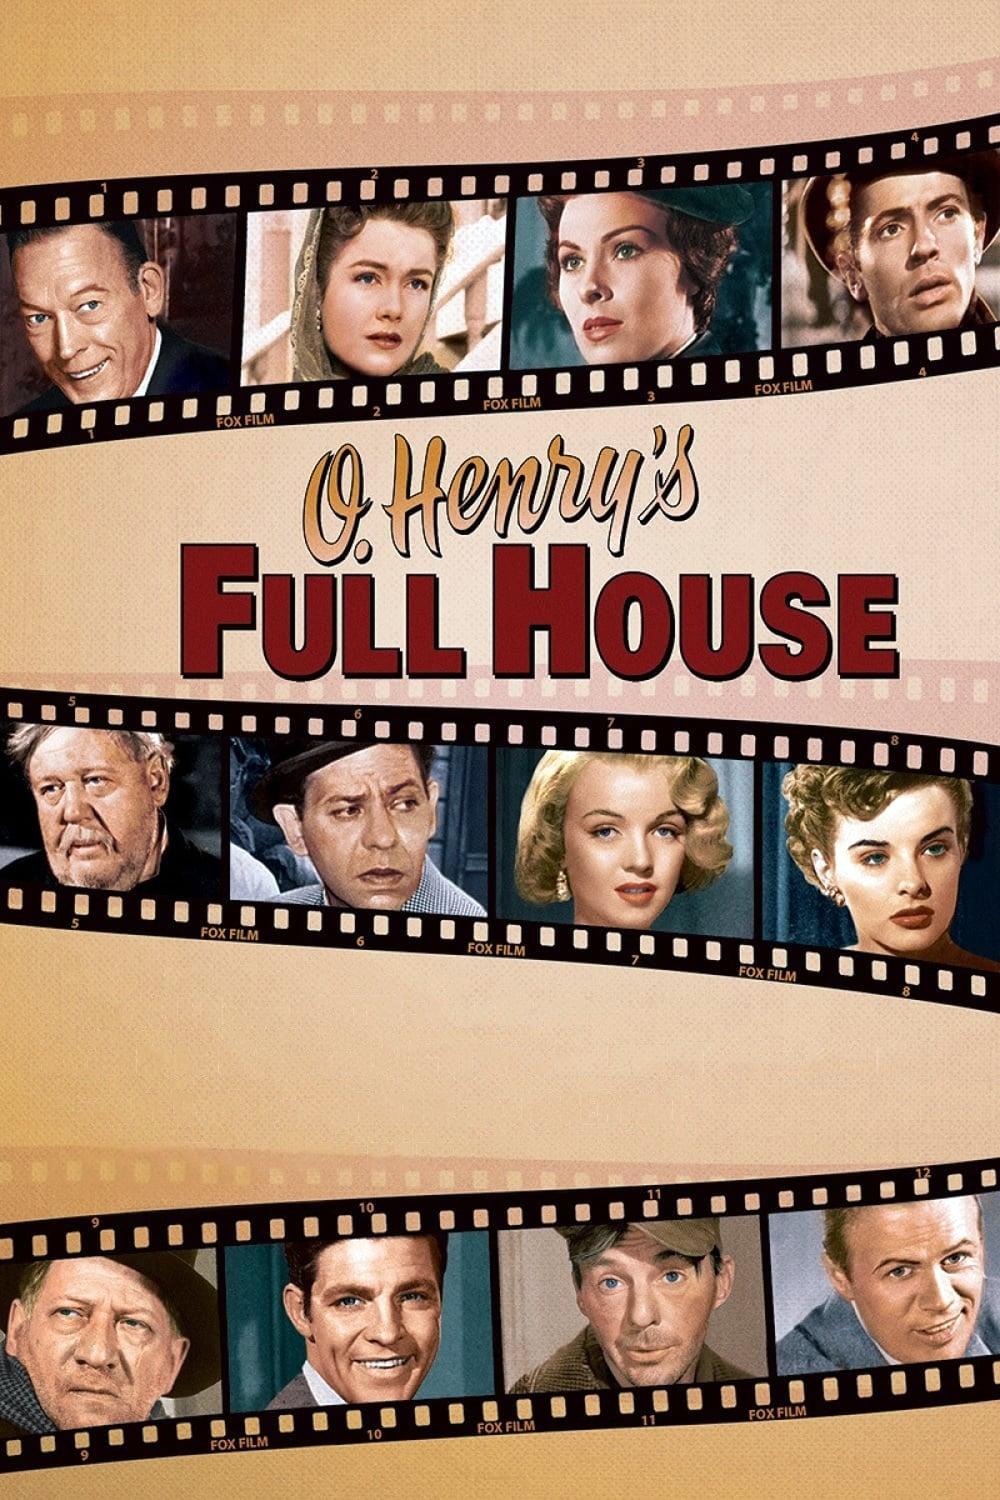 O. Henry's Full House poster